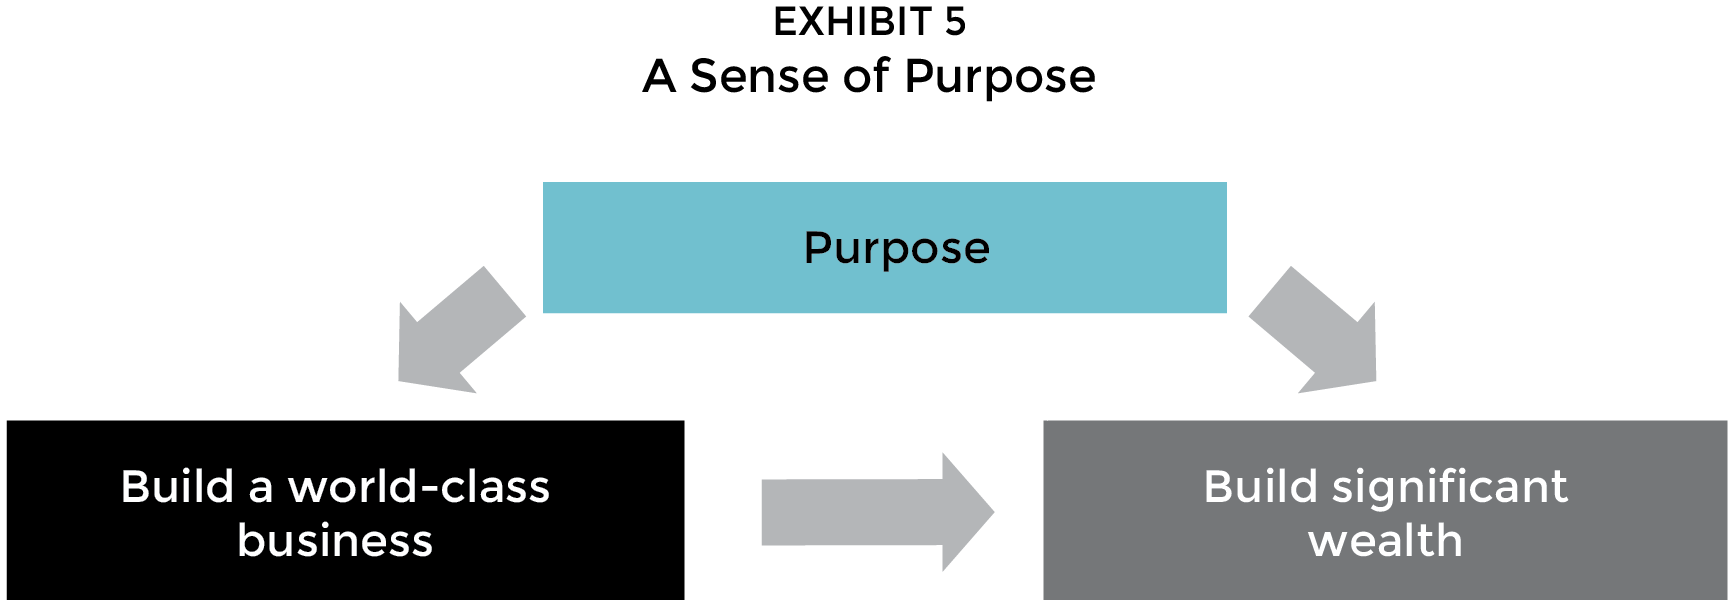 A sense of purpose